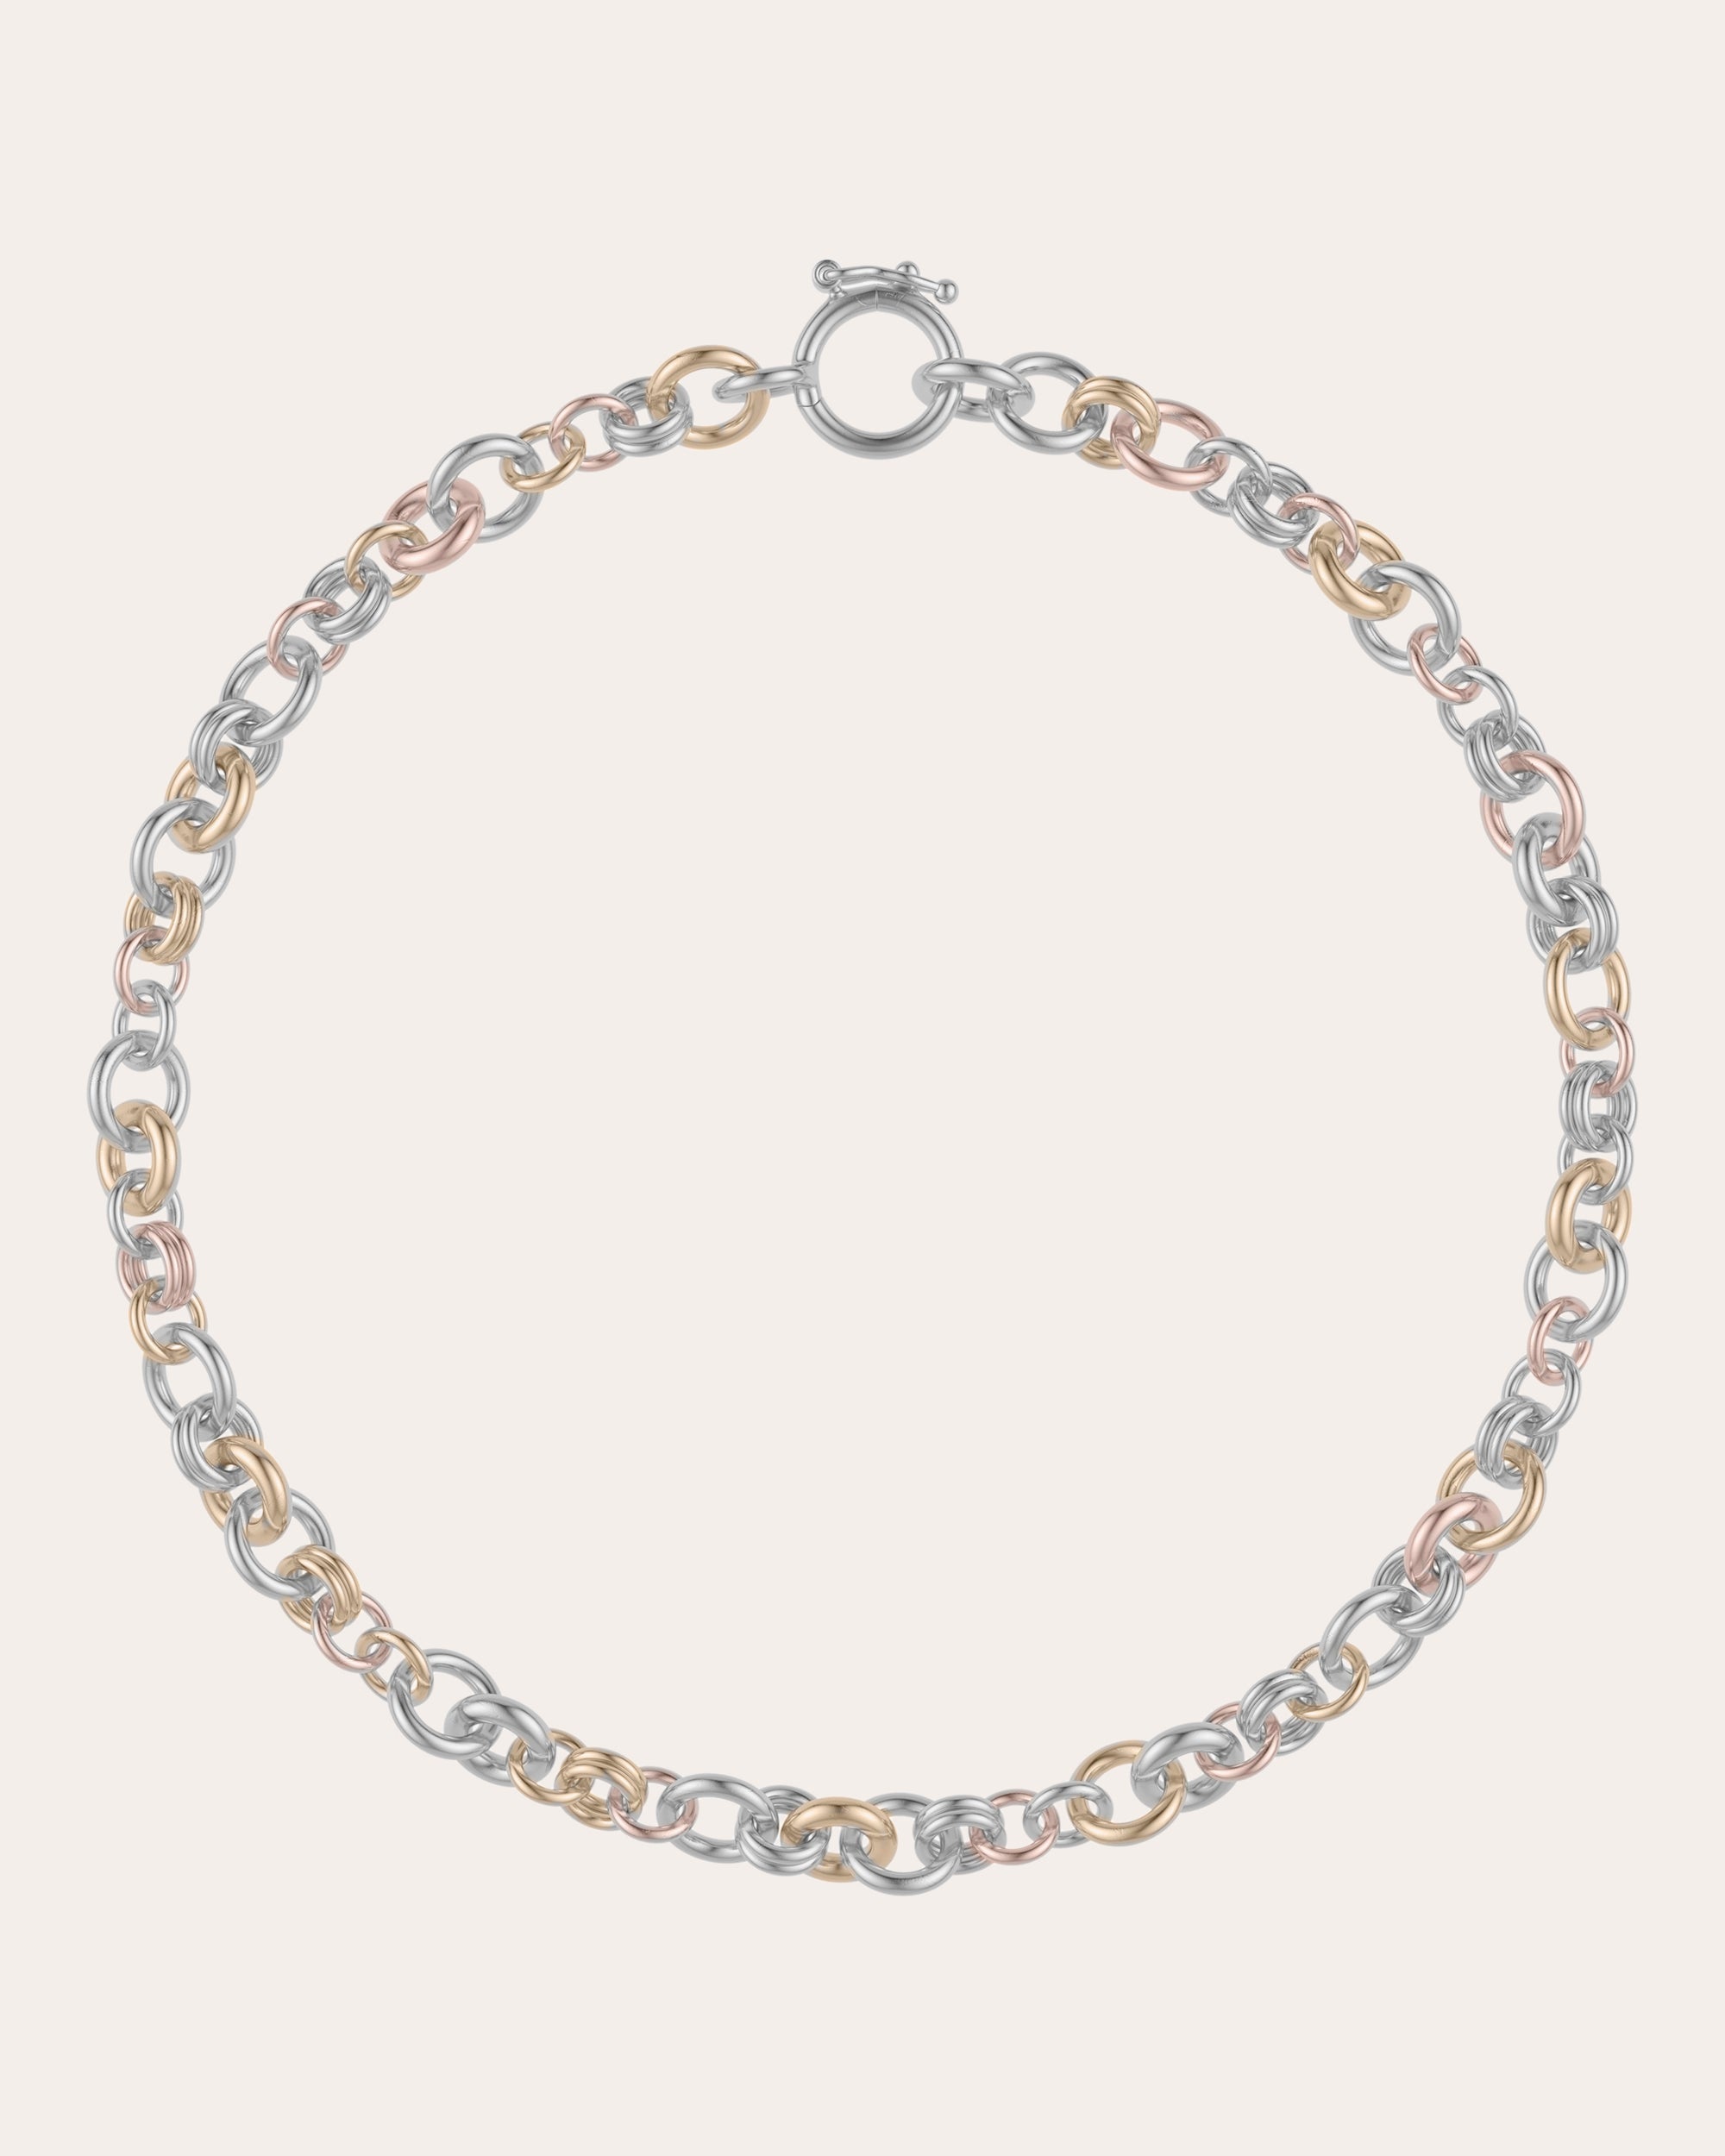 Buy Nesco Sachin Bracelet (8.0) Online at Low Prices in India | Amazon  Jewellery Store - Amazon.in